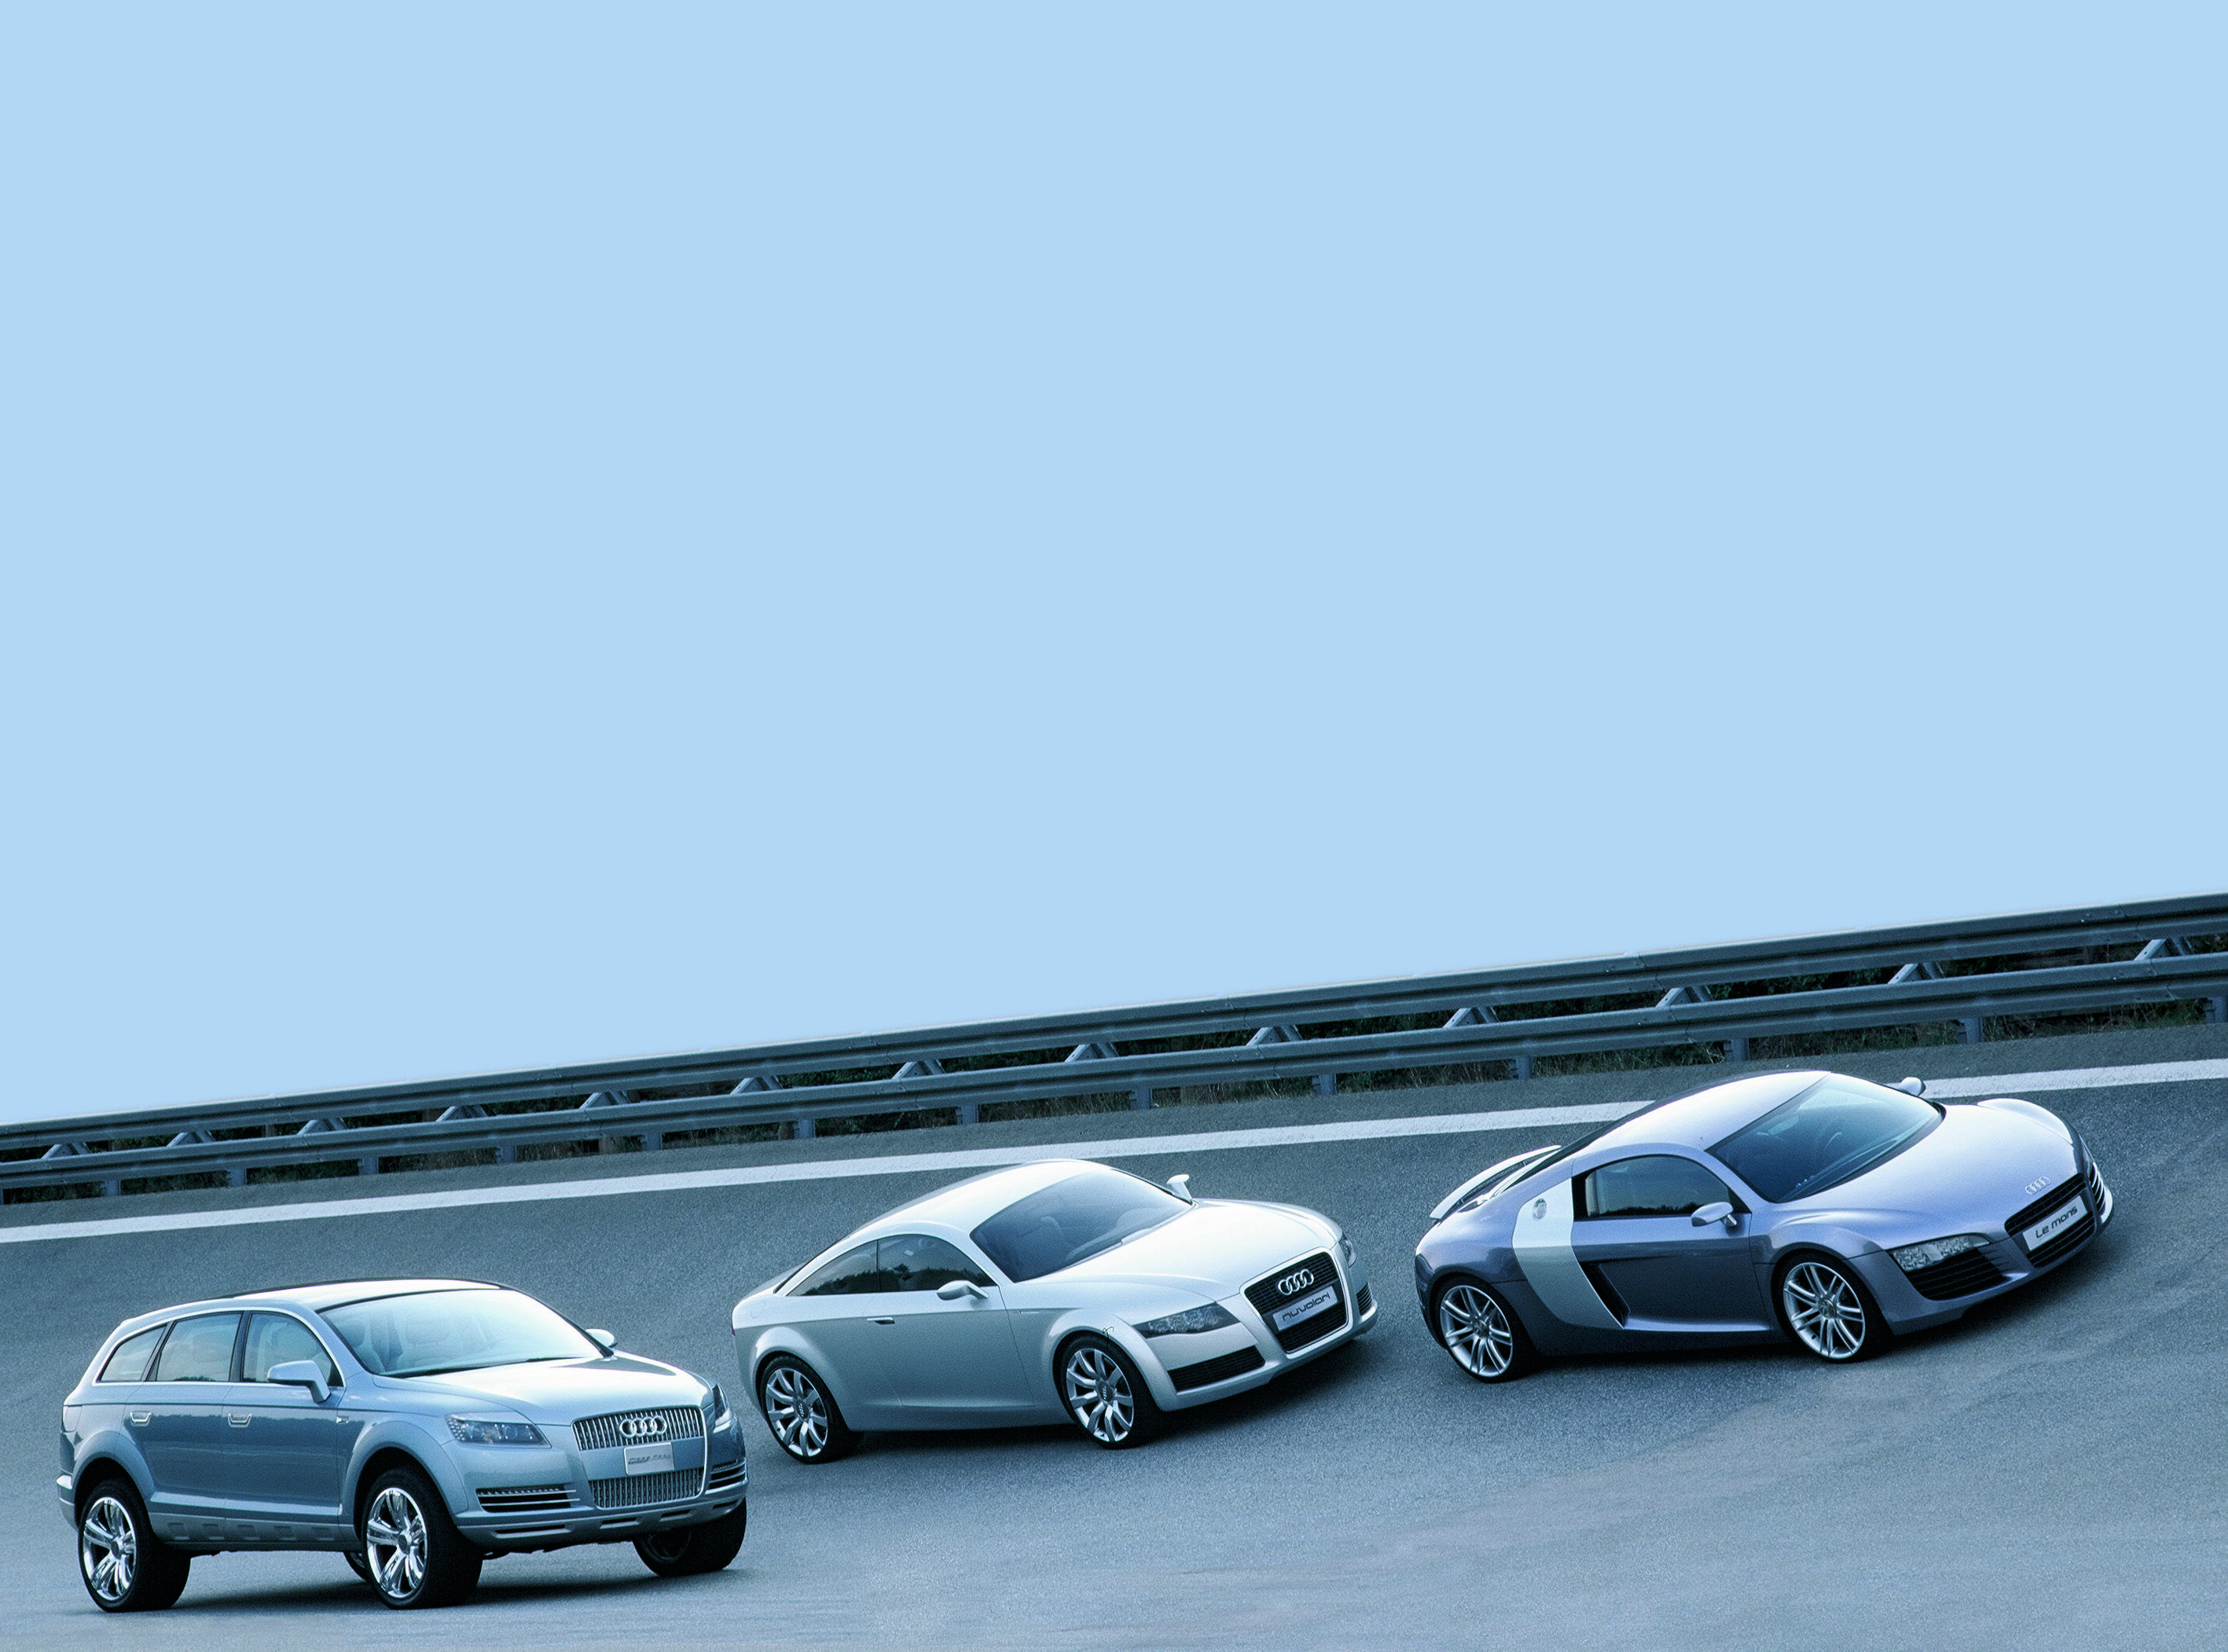 Drei aufsehenerregende Audi Studien auf einen Blick: Audi Pikes Peak quattro, Audi Nuvolari quattro und Audi Le Mans quattro (von links)